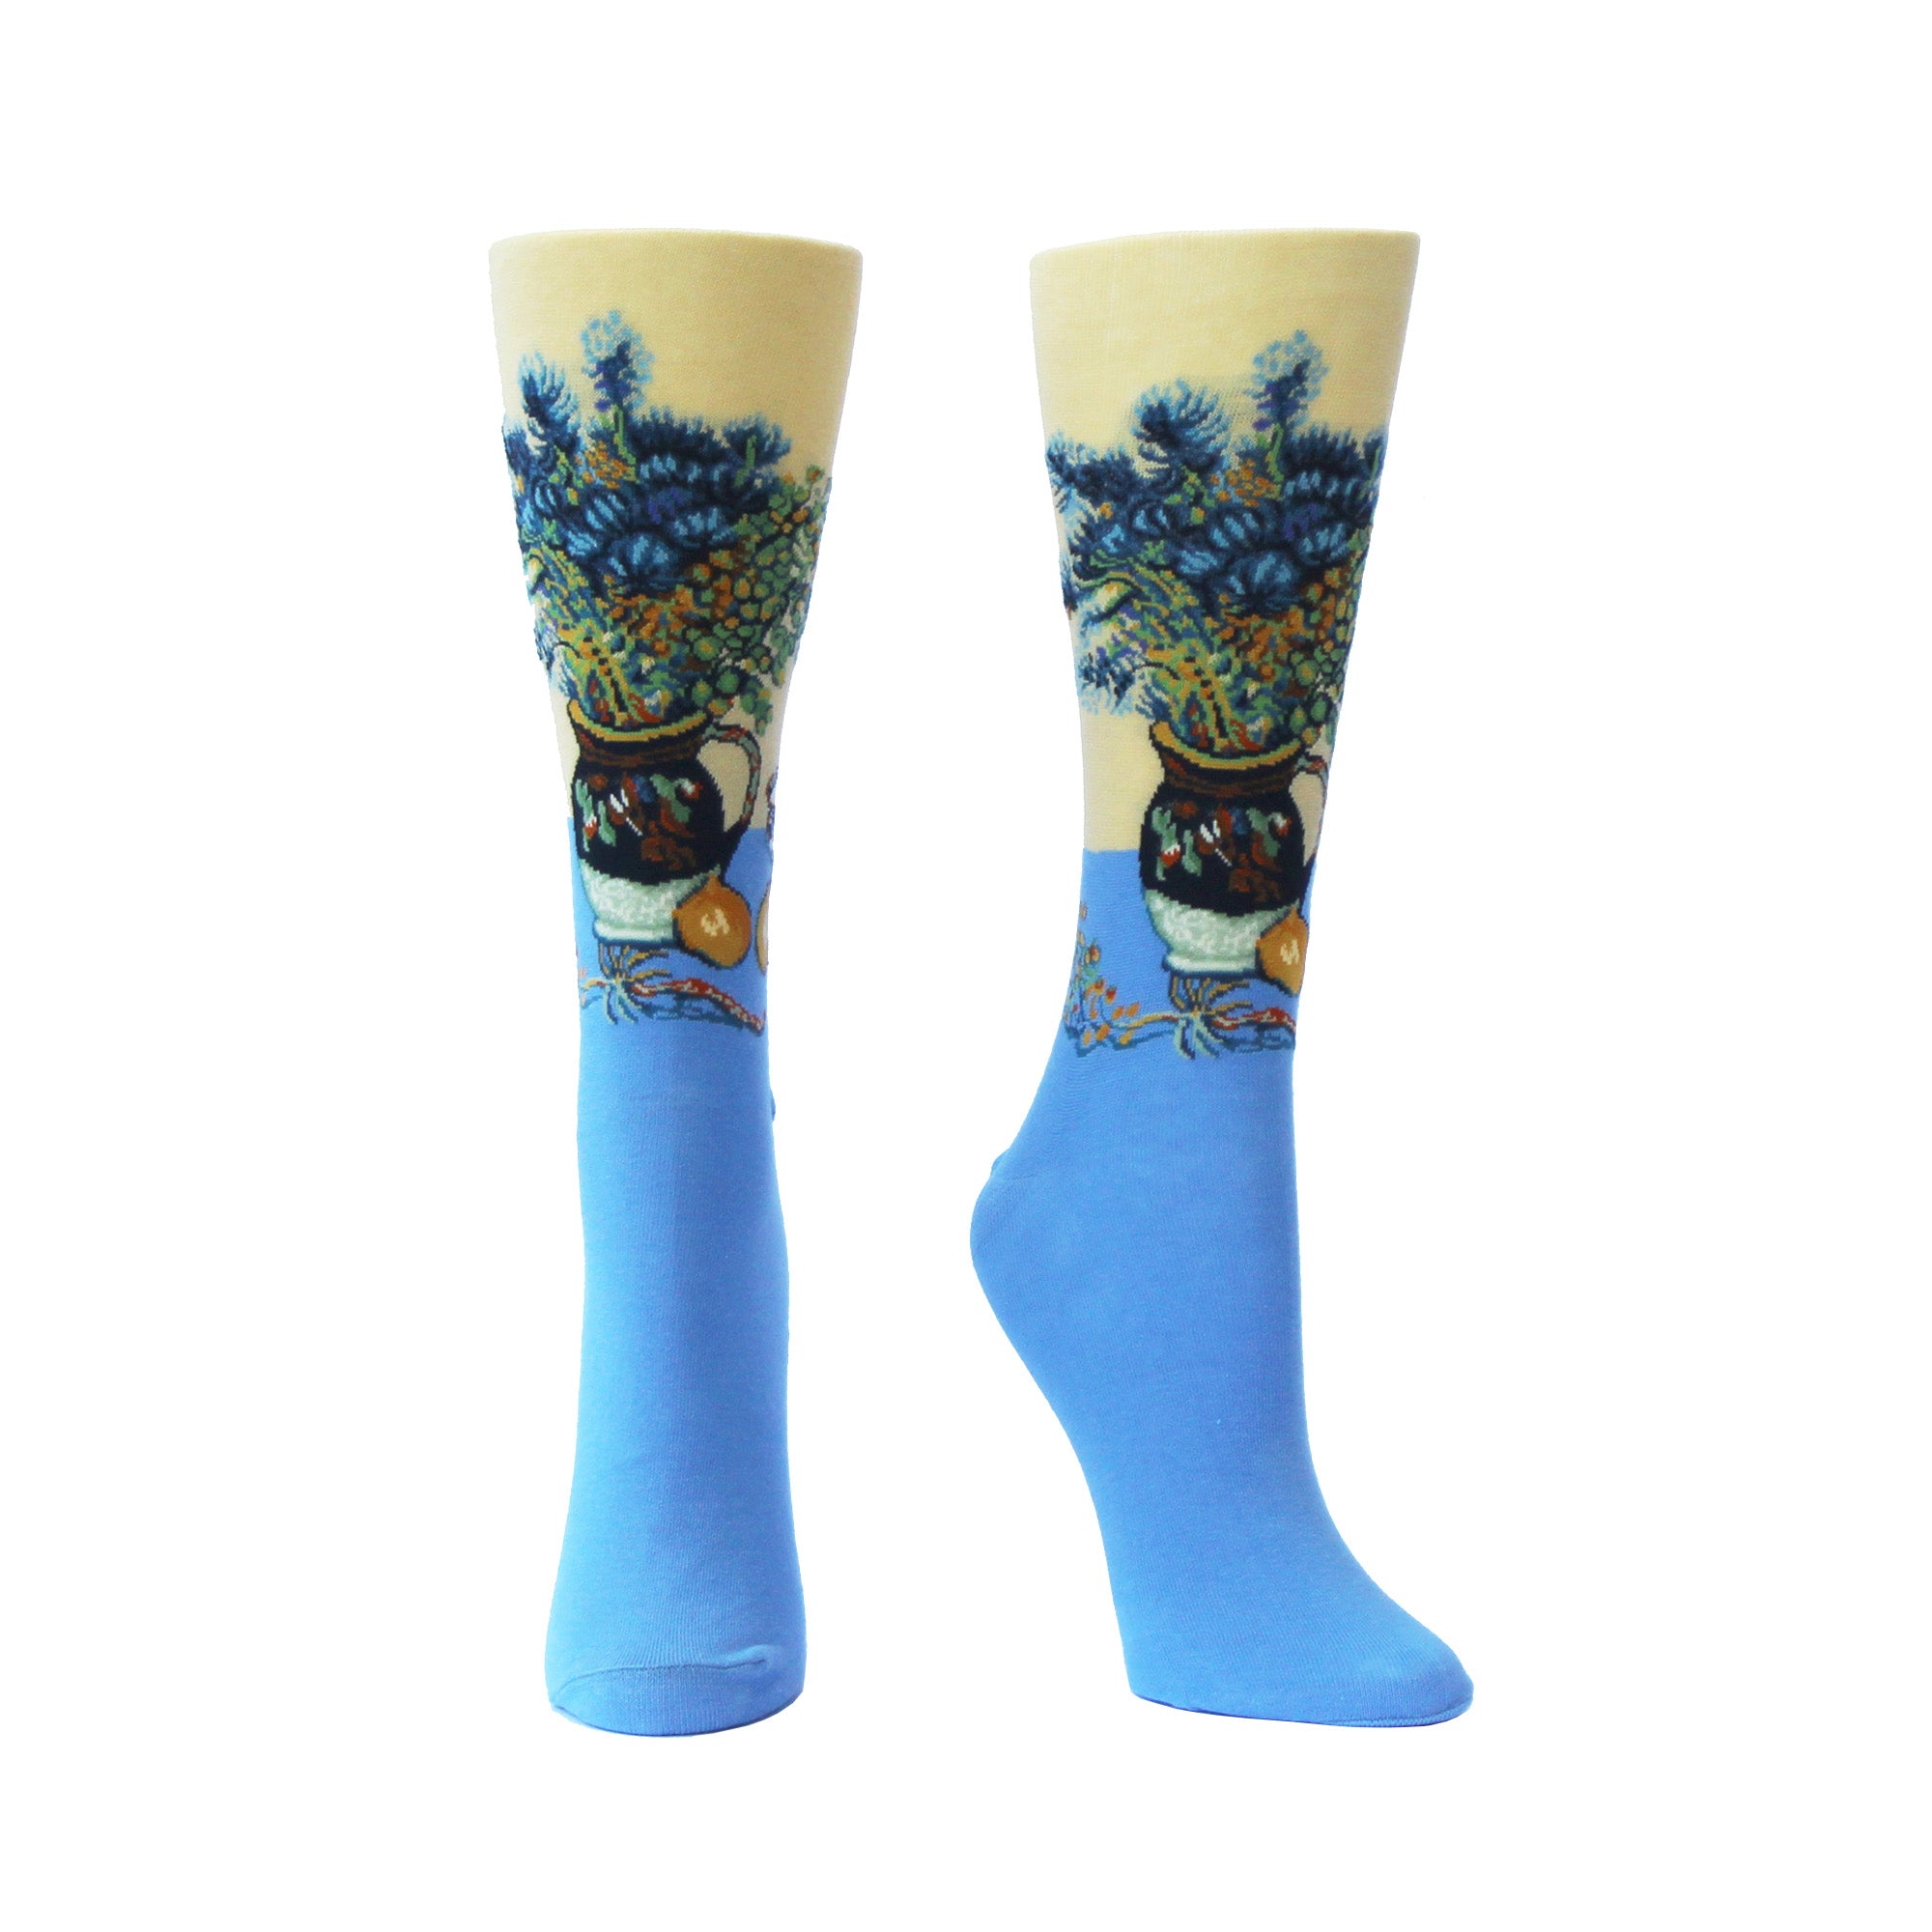 Artwork socks: Vincent van Gogh's "Still Life" flower piece